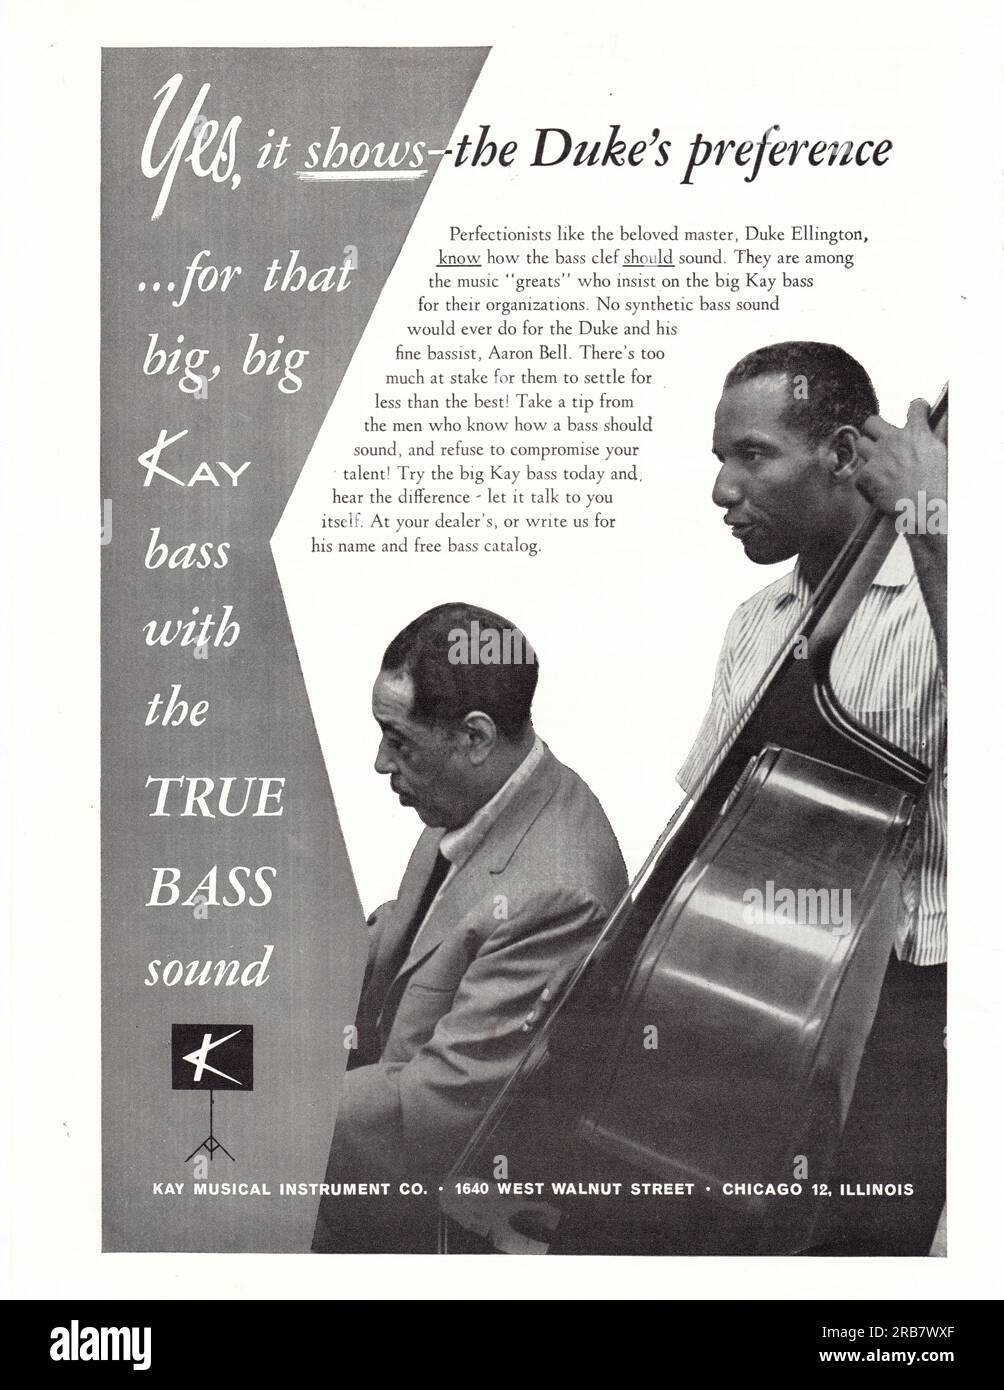 Une publicité vintage pour une Kay Bass mettant en vedette Duke Ellington et son bassiste de l'époque, Aaron Bell. D'un magazine de musique du début des années 1960. Banque D'Images